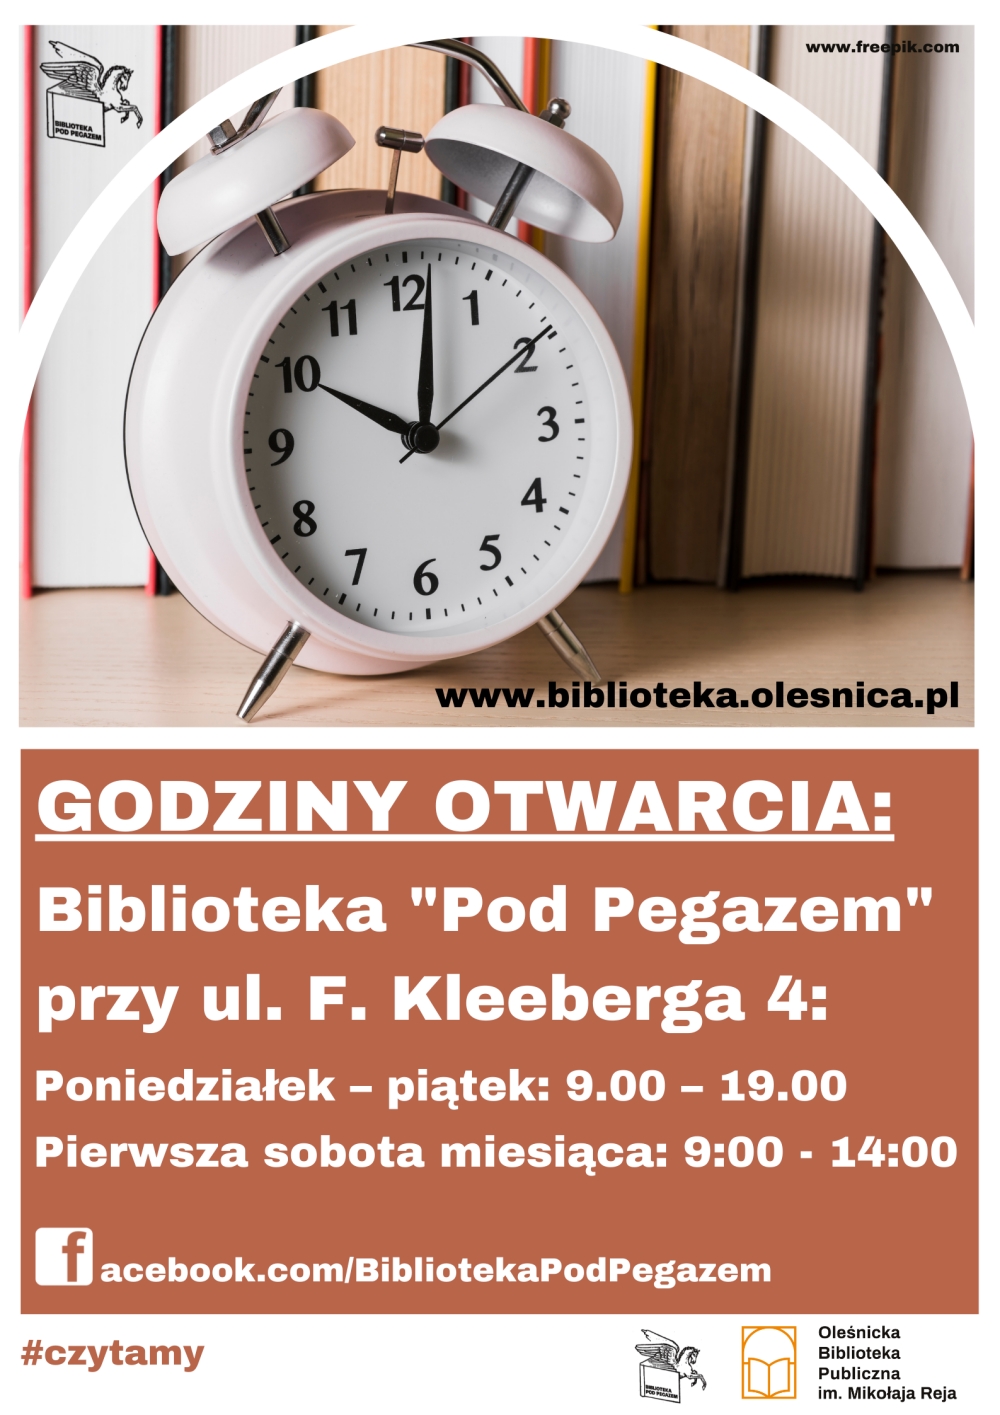 Godziny otwarcia Biblioteki przy ul. F. Kleeberga 4